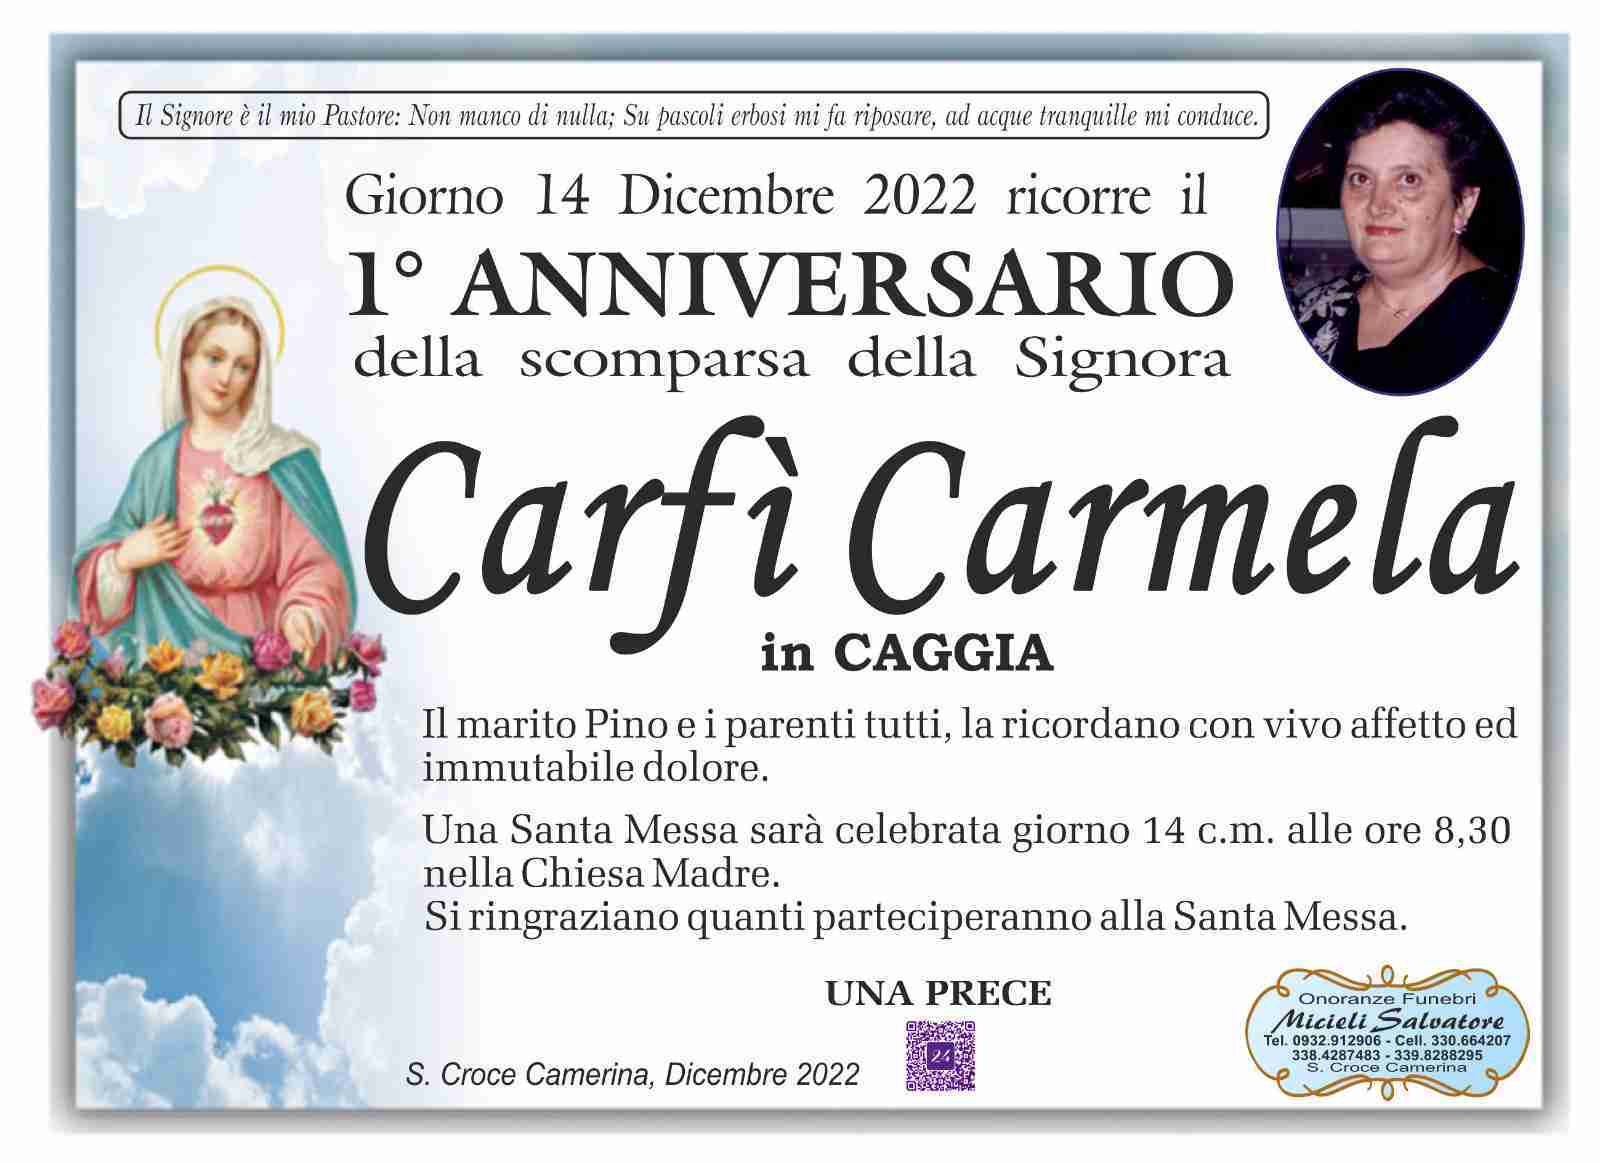 Carmela Carfí